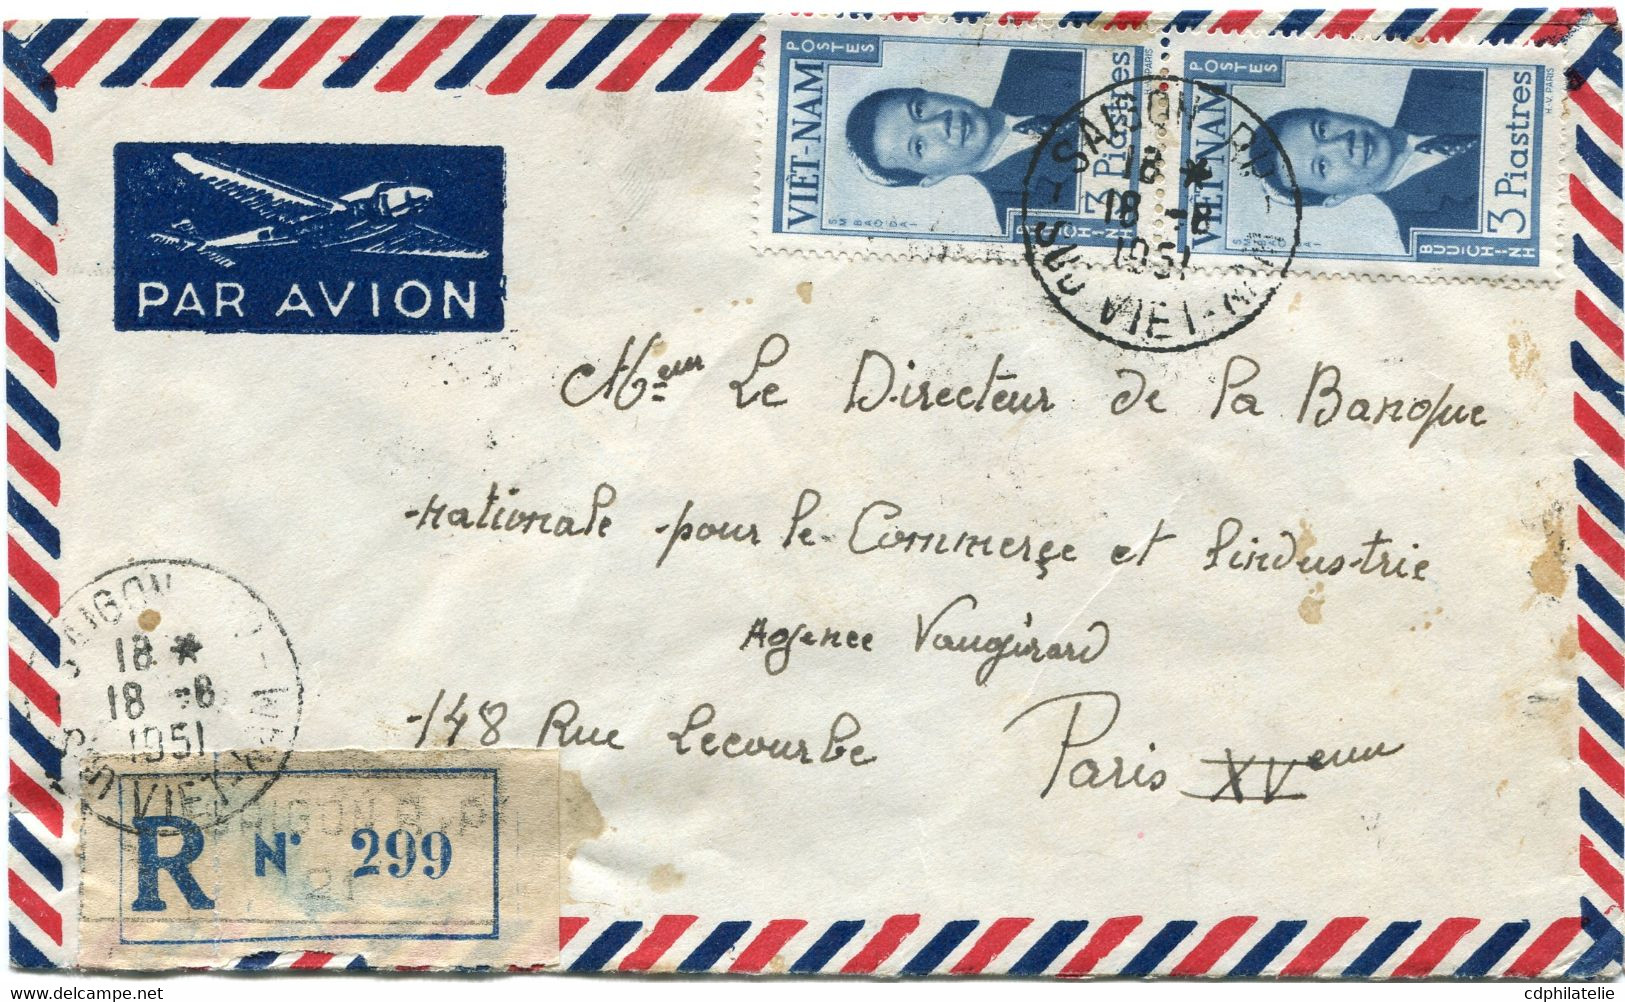 VIET-NAM LETTRE RECOMMANDEE PAR AVION DEPART SAIGON 18-6-1951 SUD VIET-NAM POUR LA FRANCE - Viêt-Nam